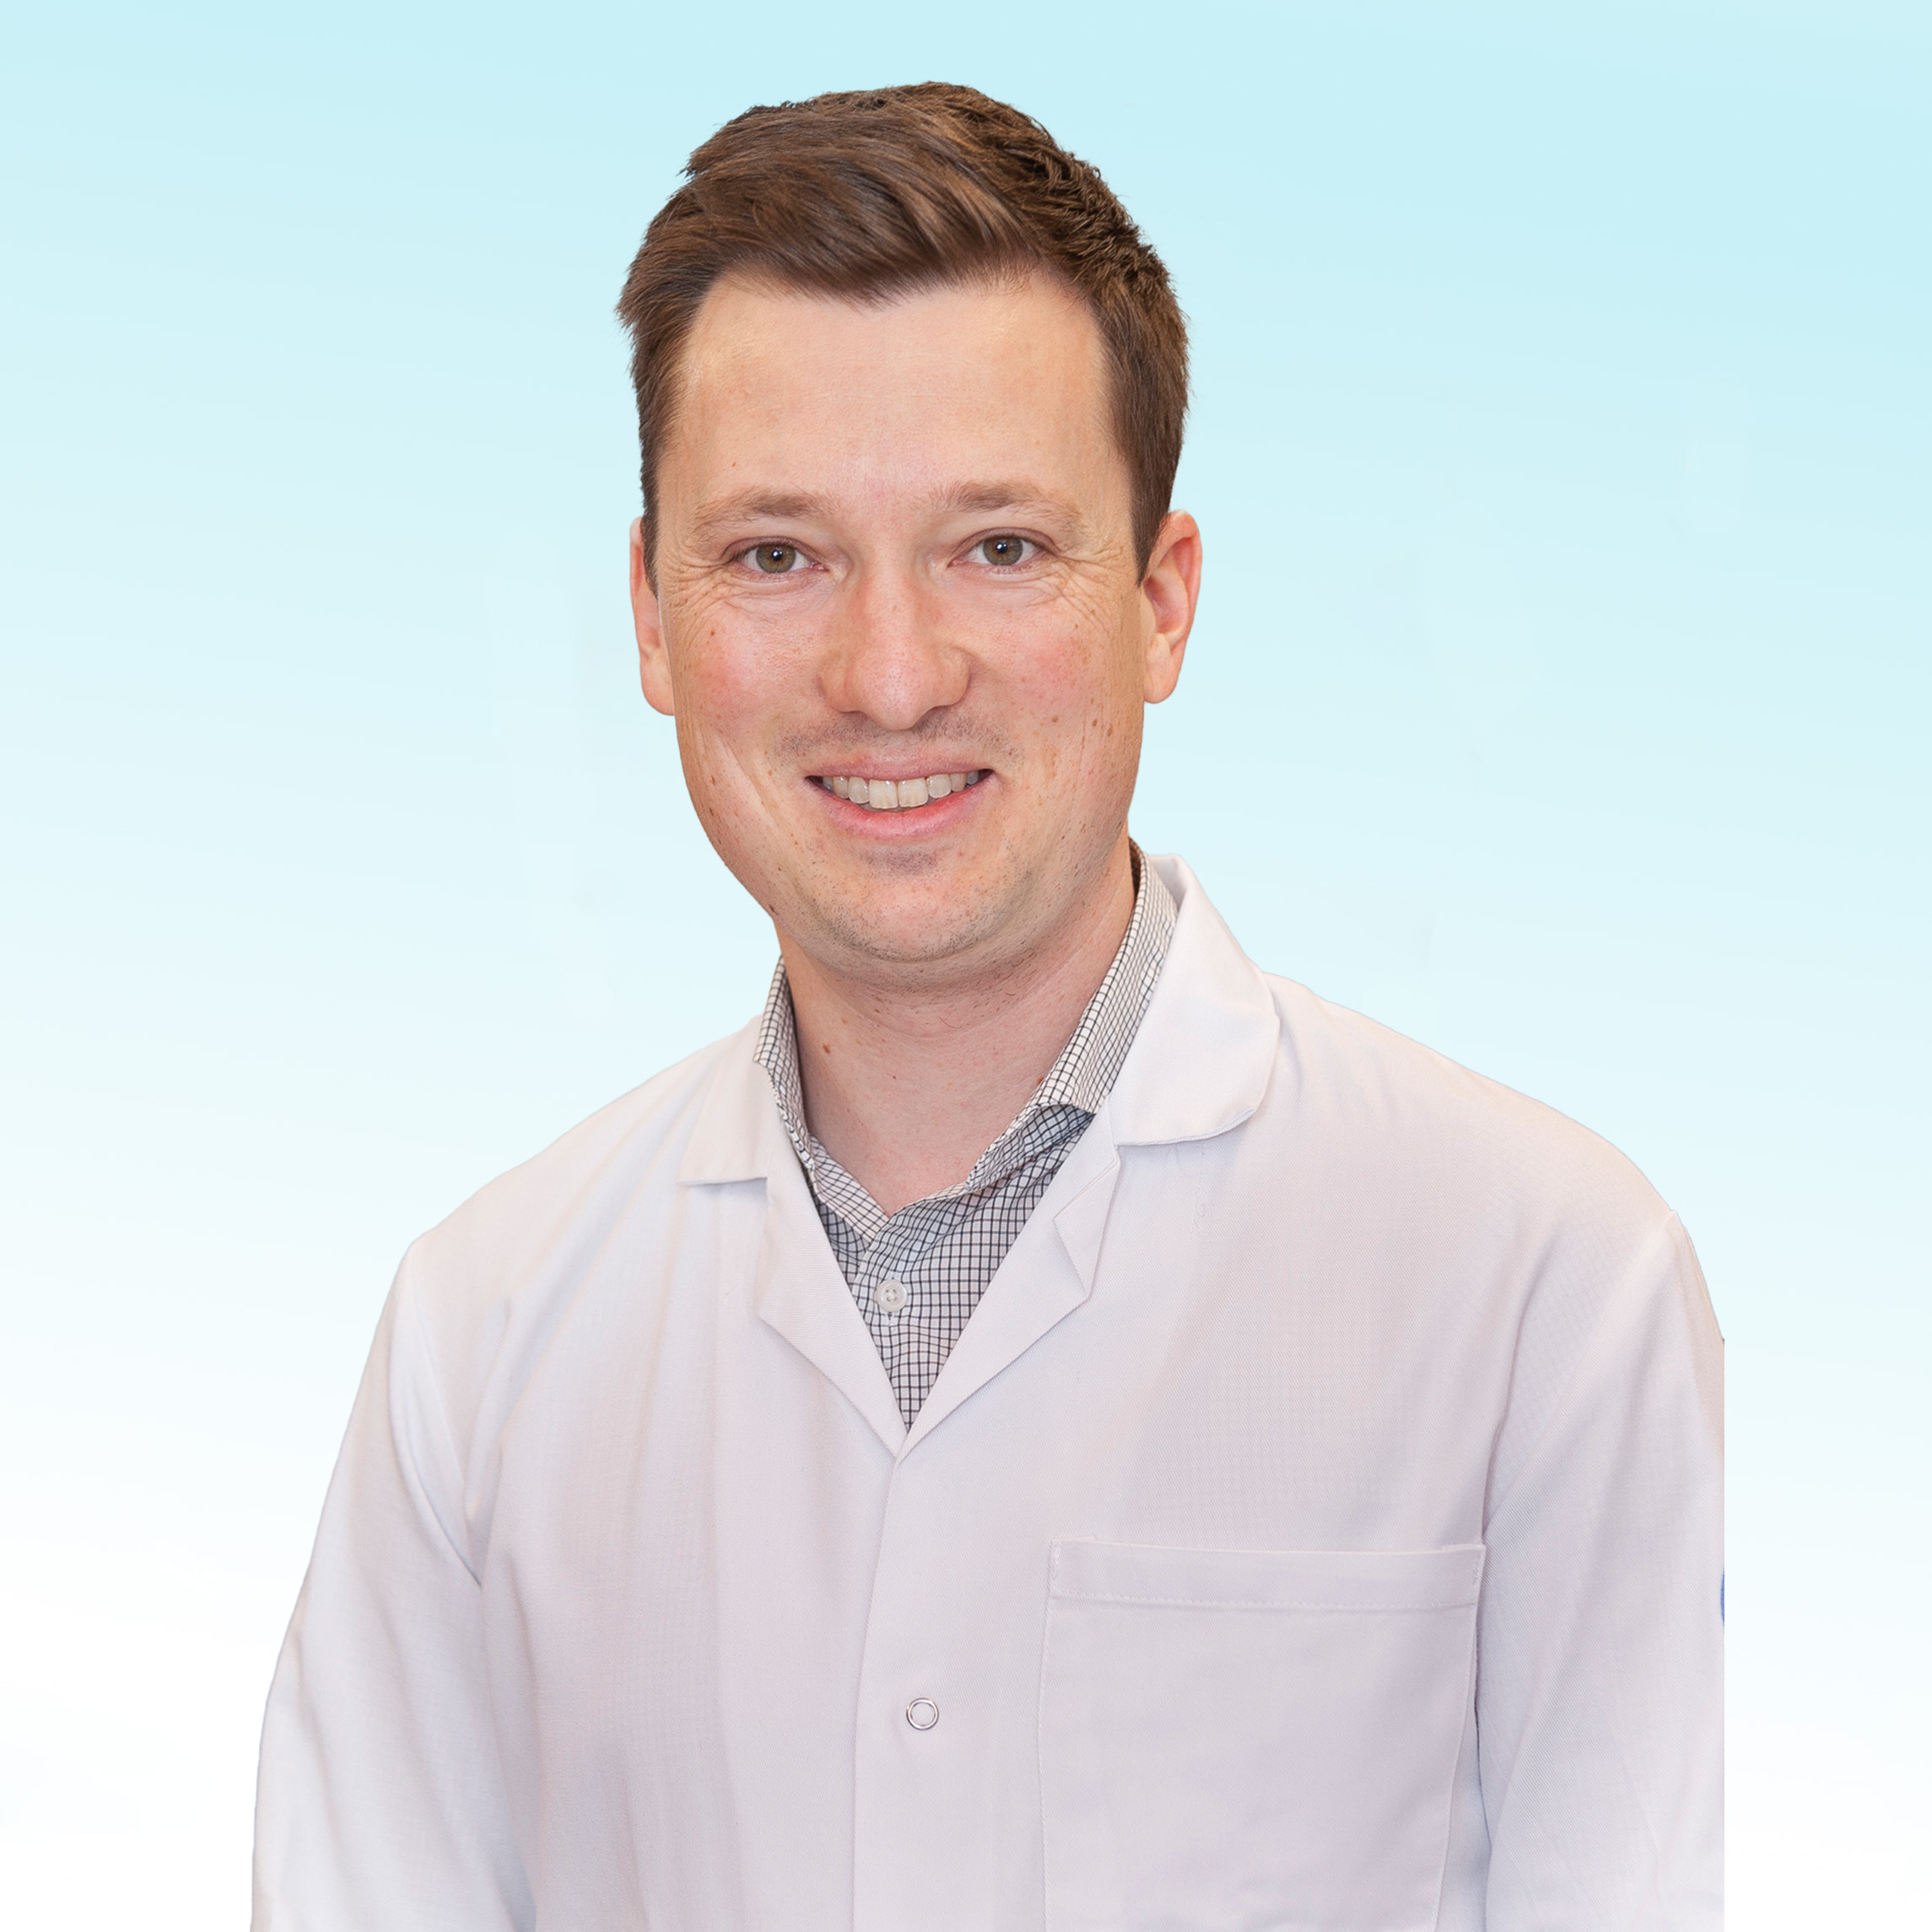 Dermatologist, Dr. med. Lukas Krähenbühl